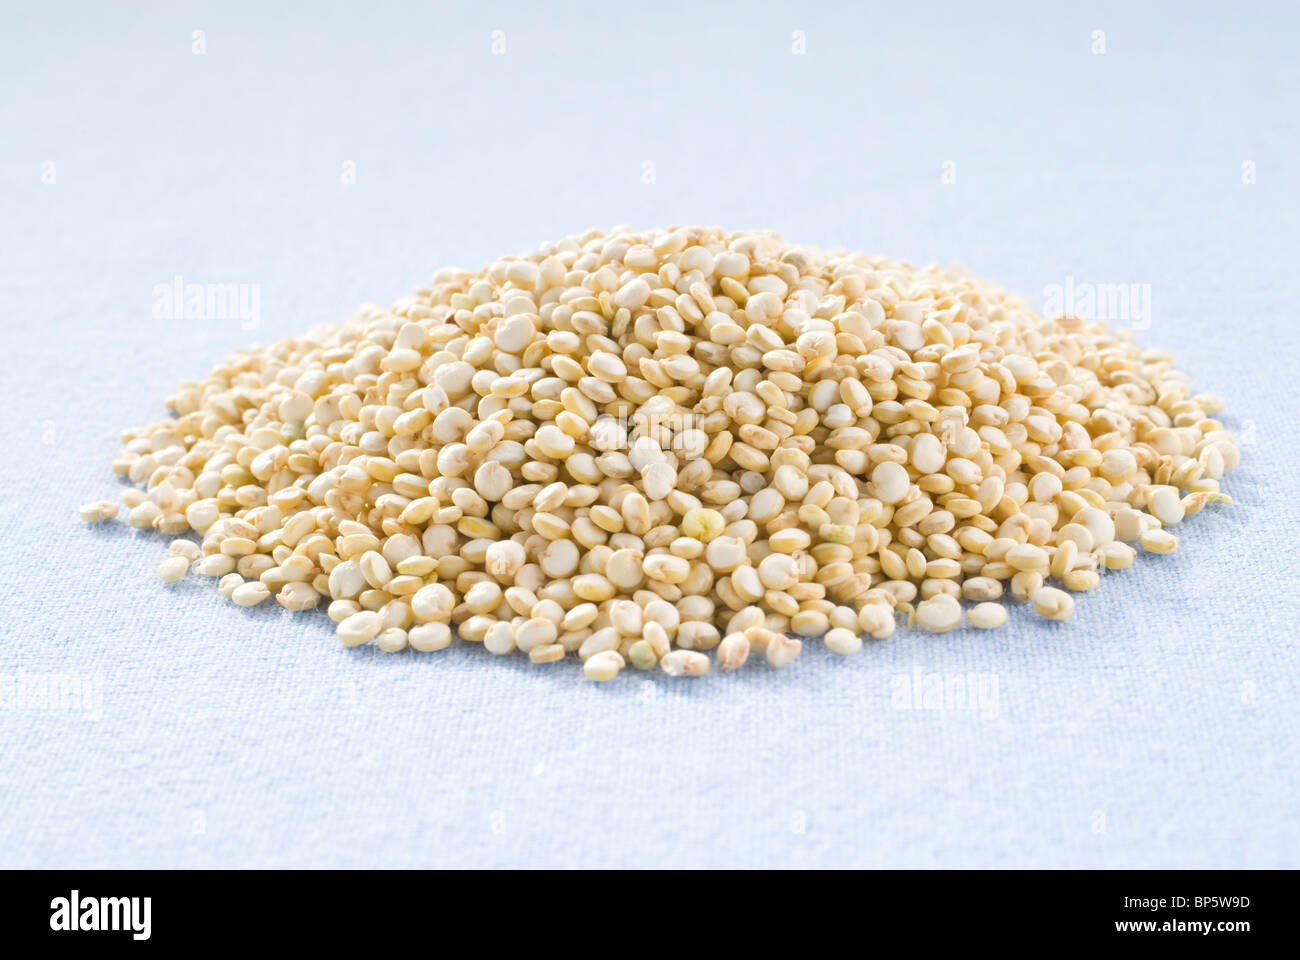 quinoa grains pile Stock Photo